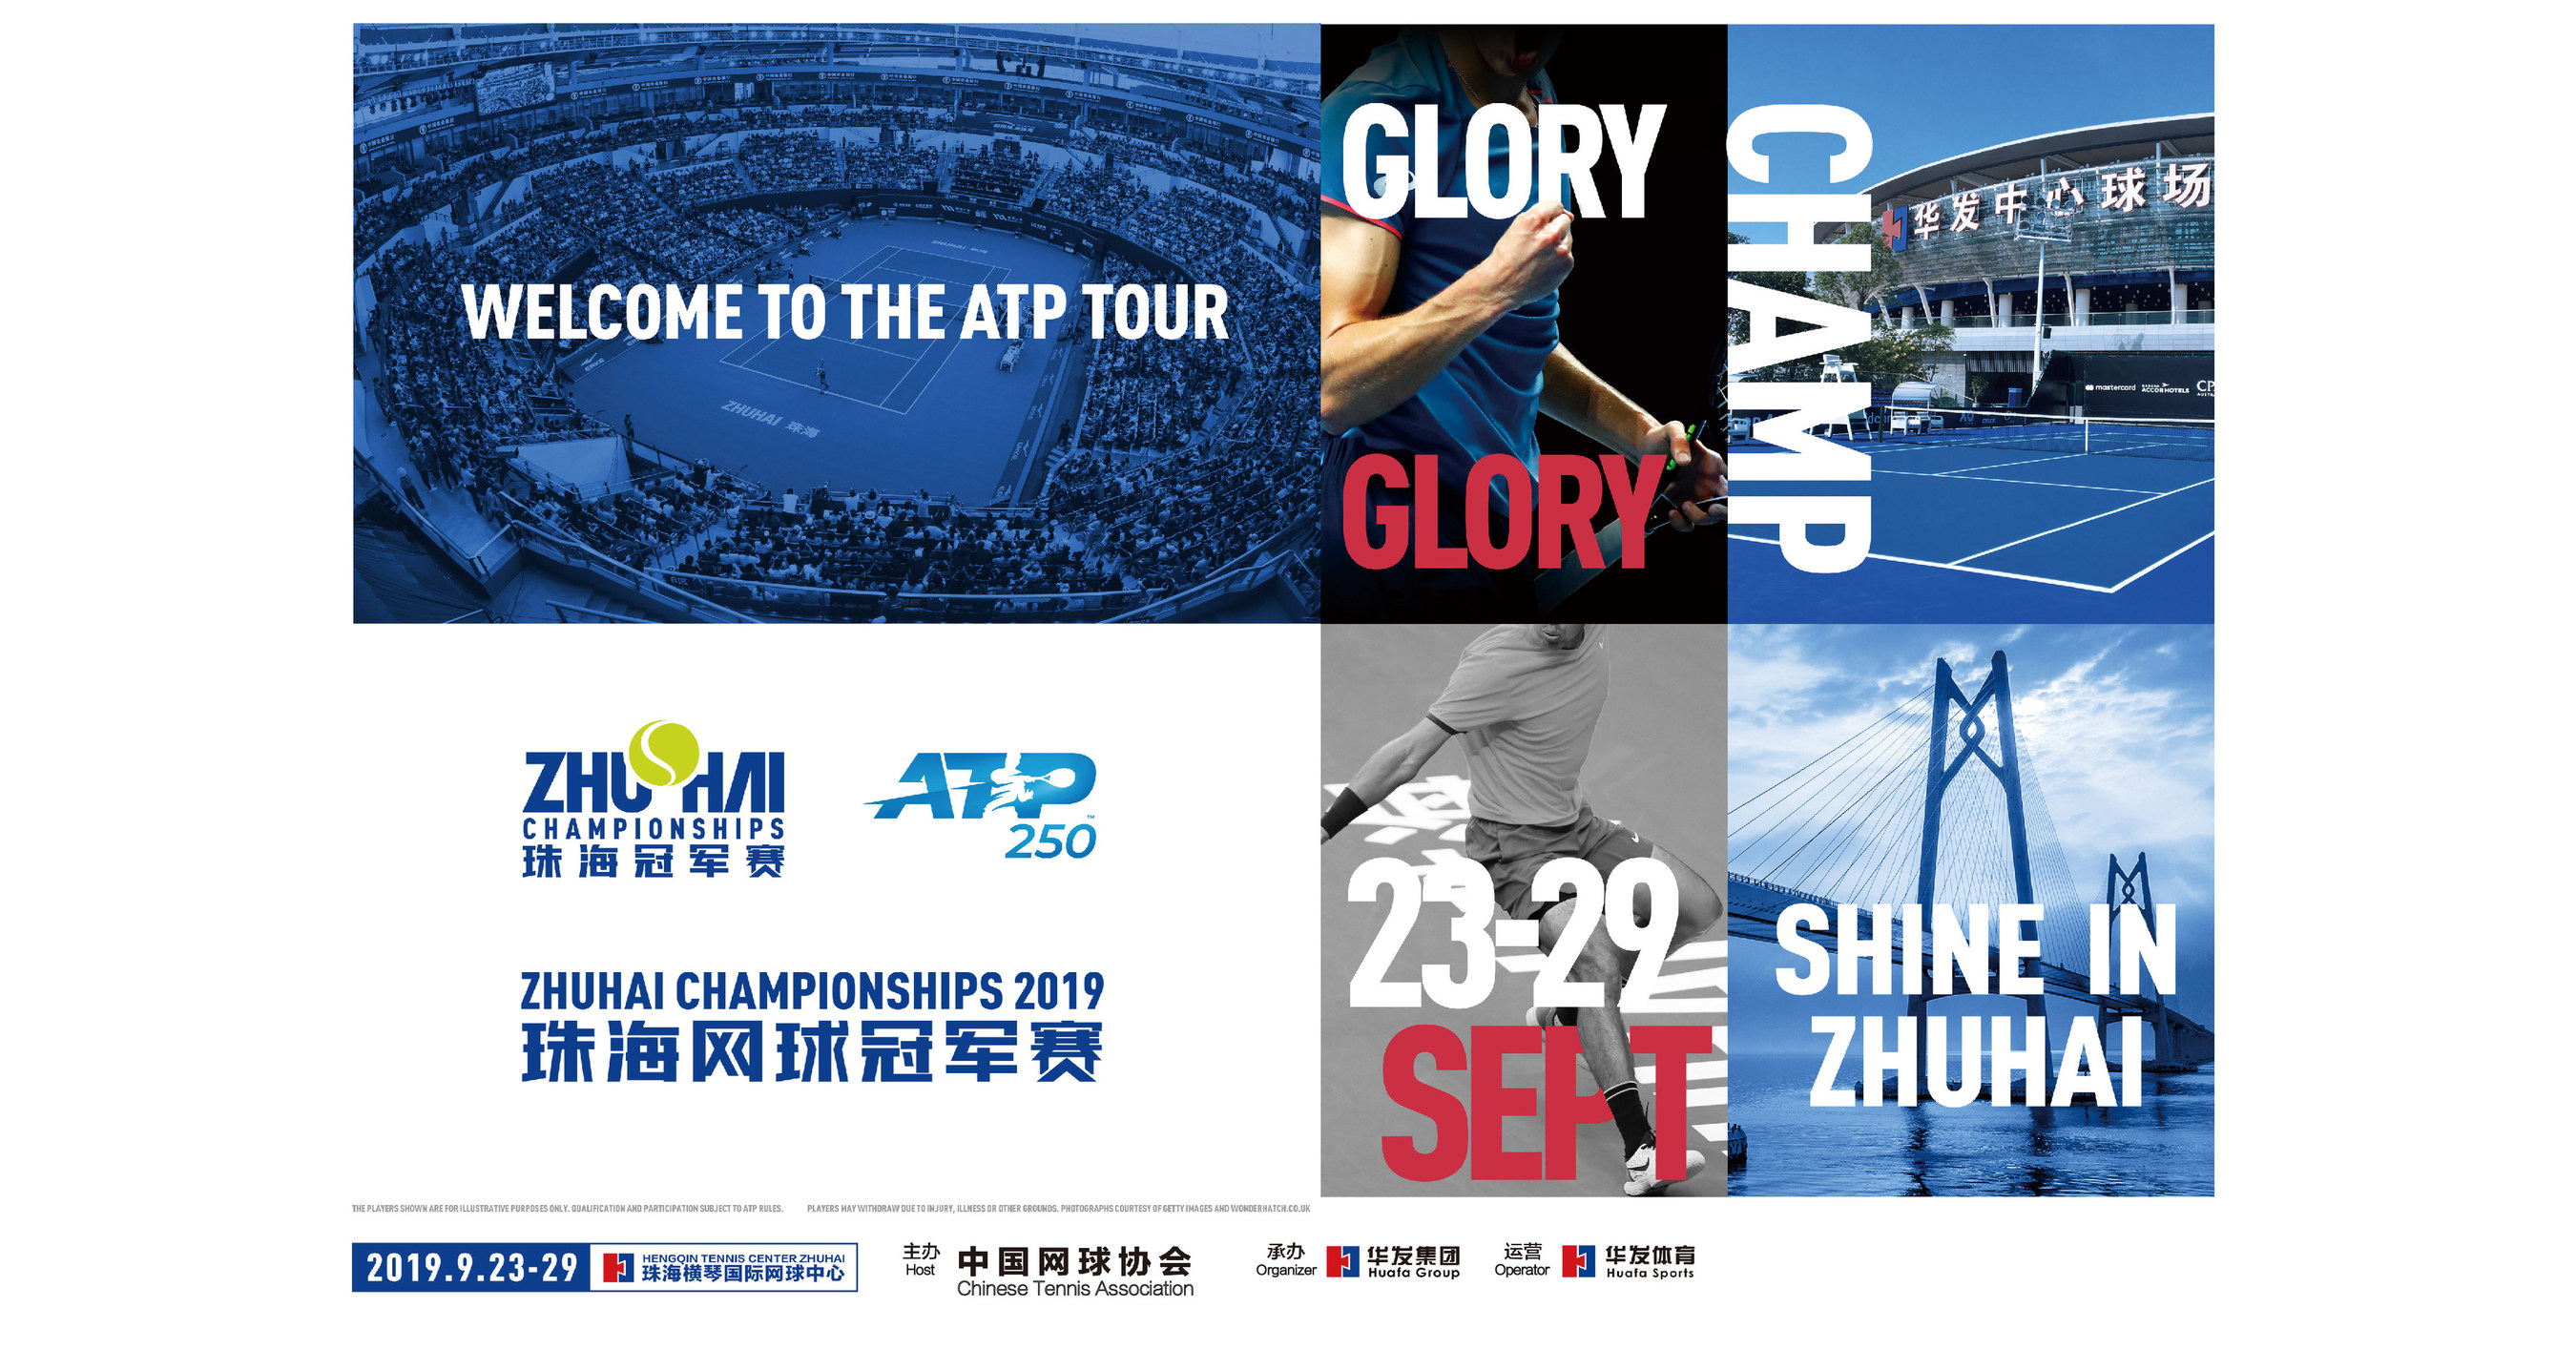 Les championnats ATP World Tour 250 Zhuhai débuteront en septembre